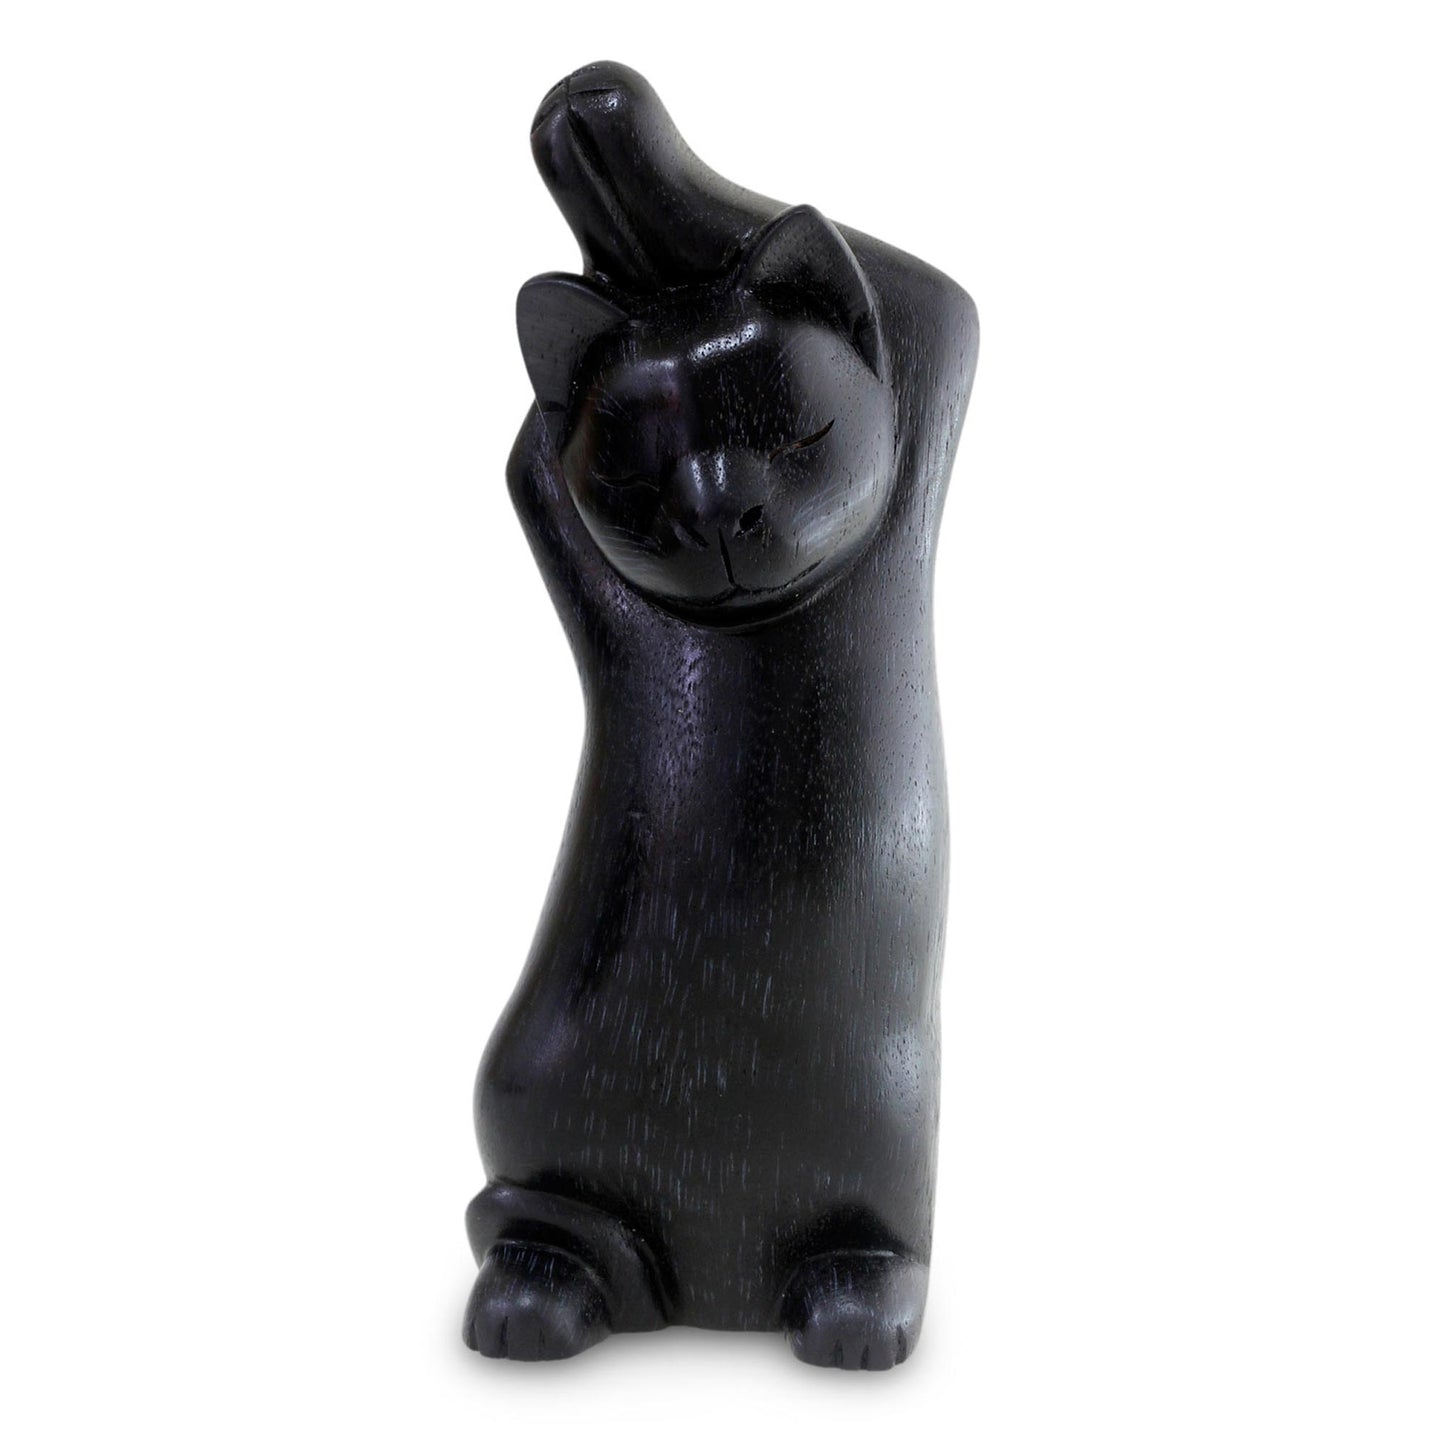 Black Cat Stretch Wood sculpture